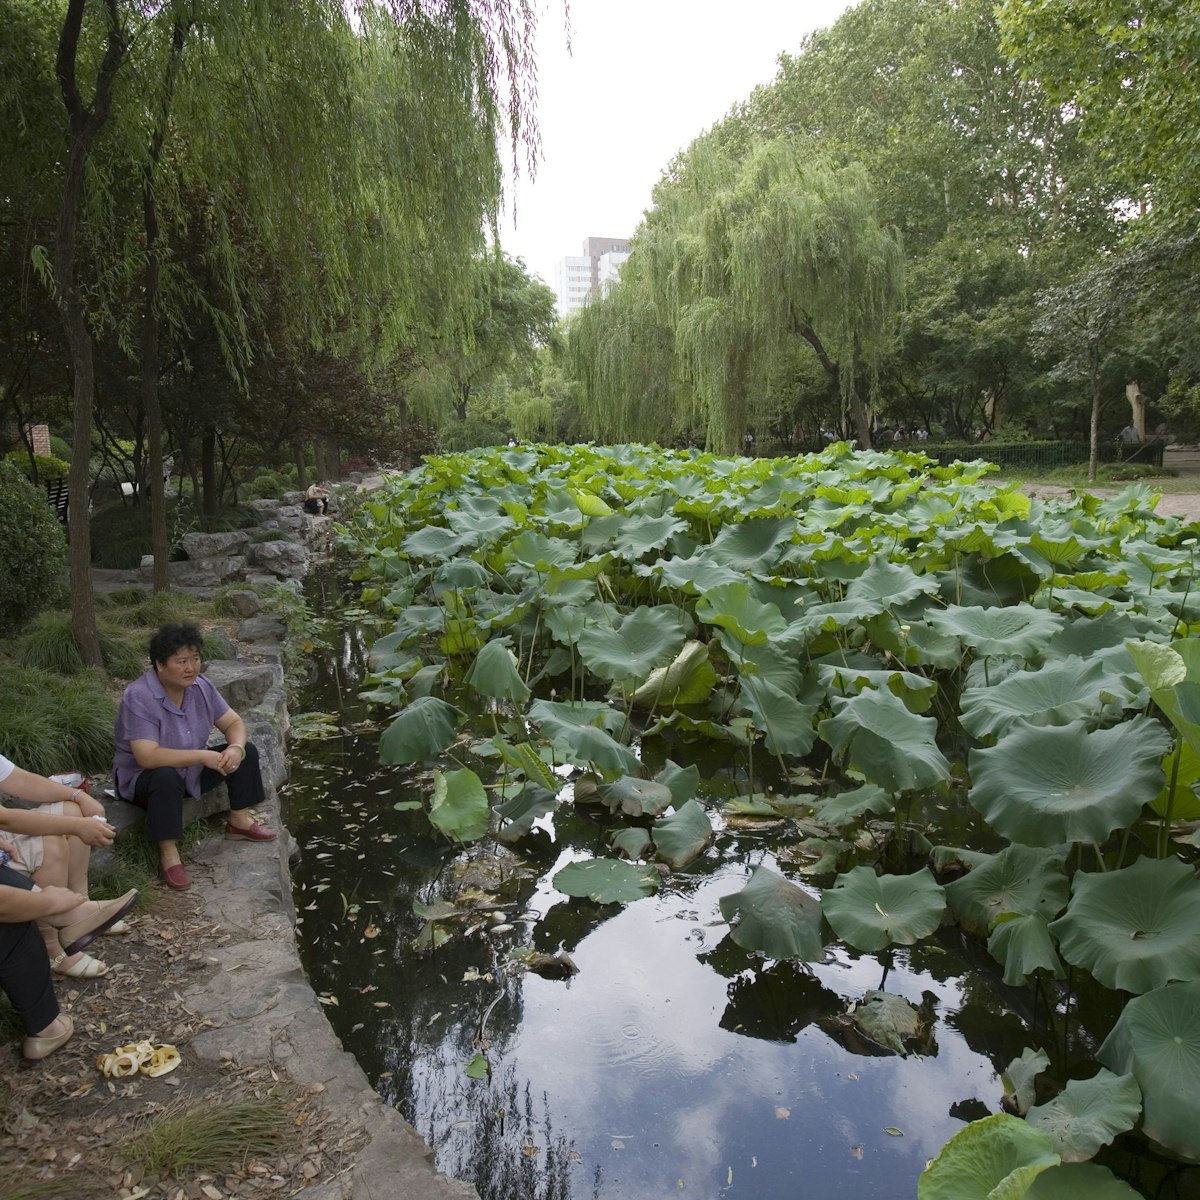 Relaxing beside Lotus pond, Lu Xun Park, Hongqiao.